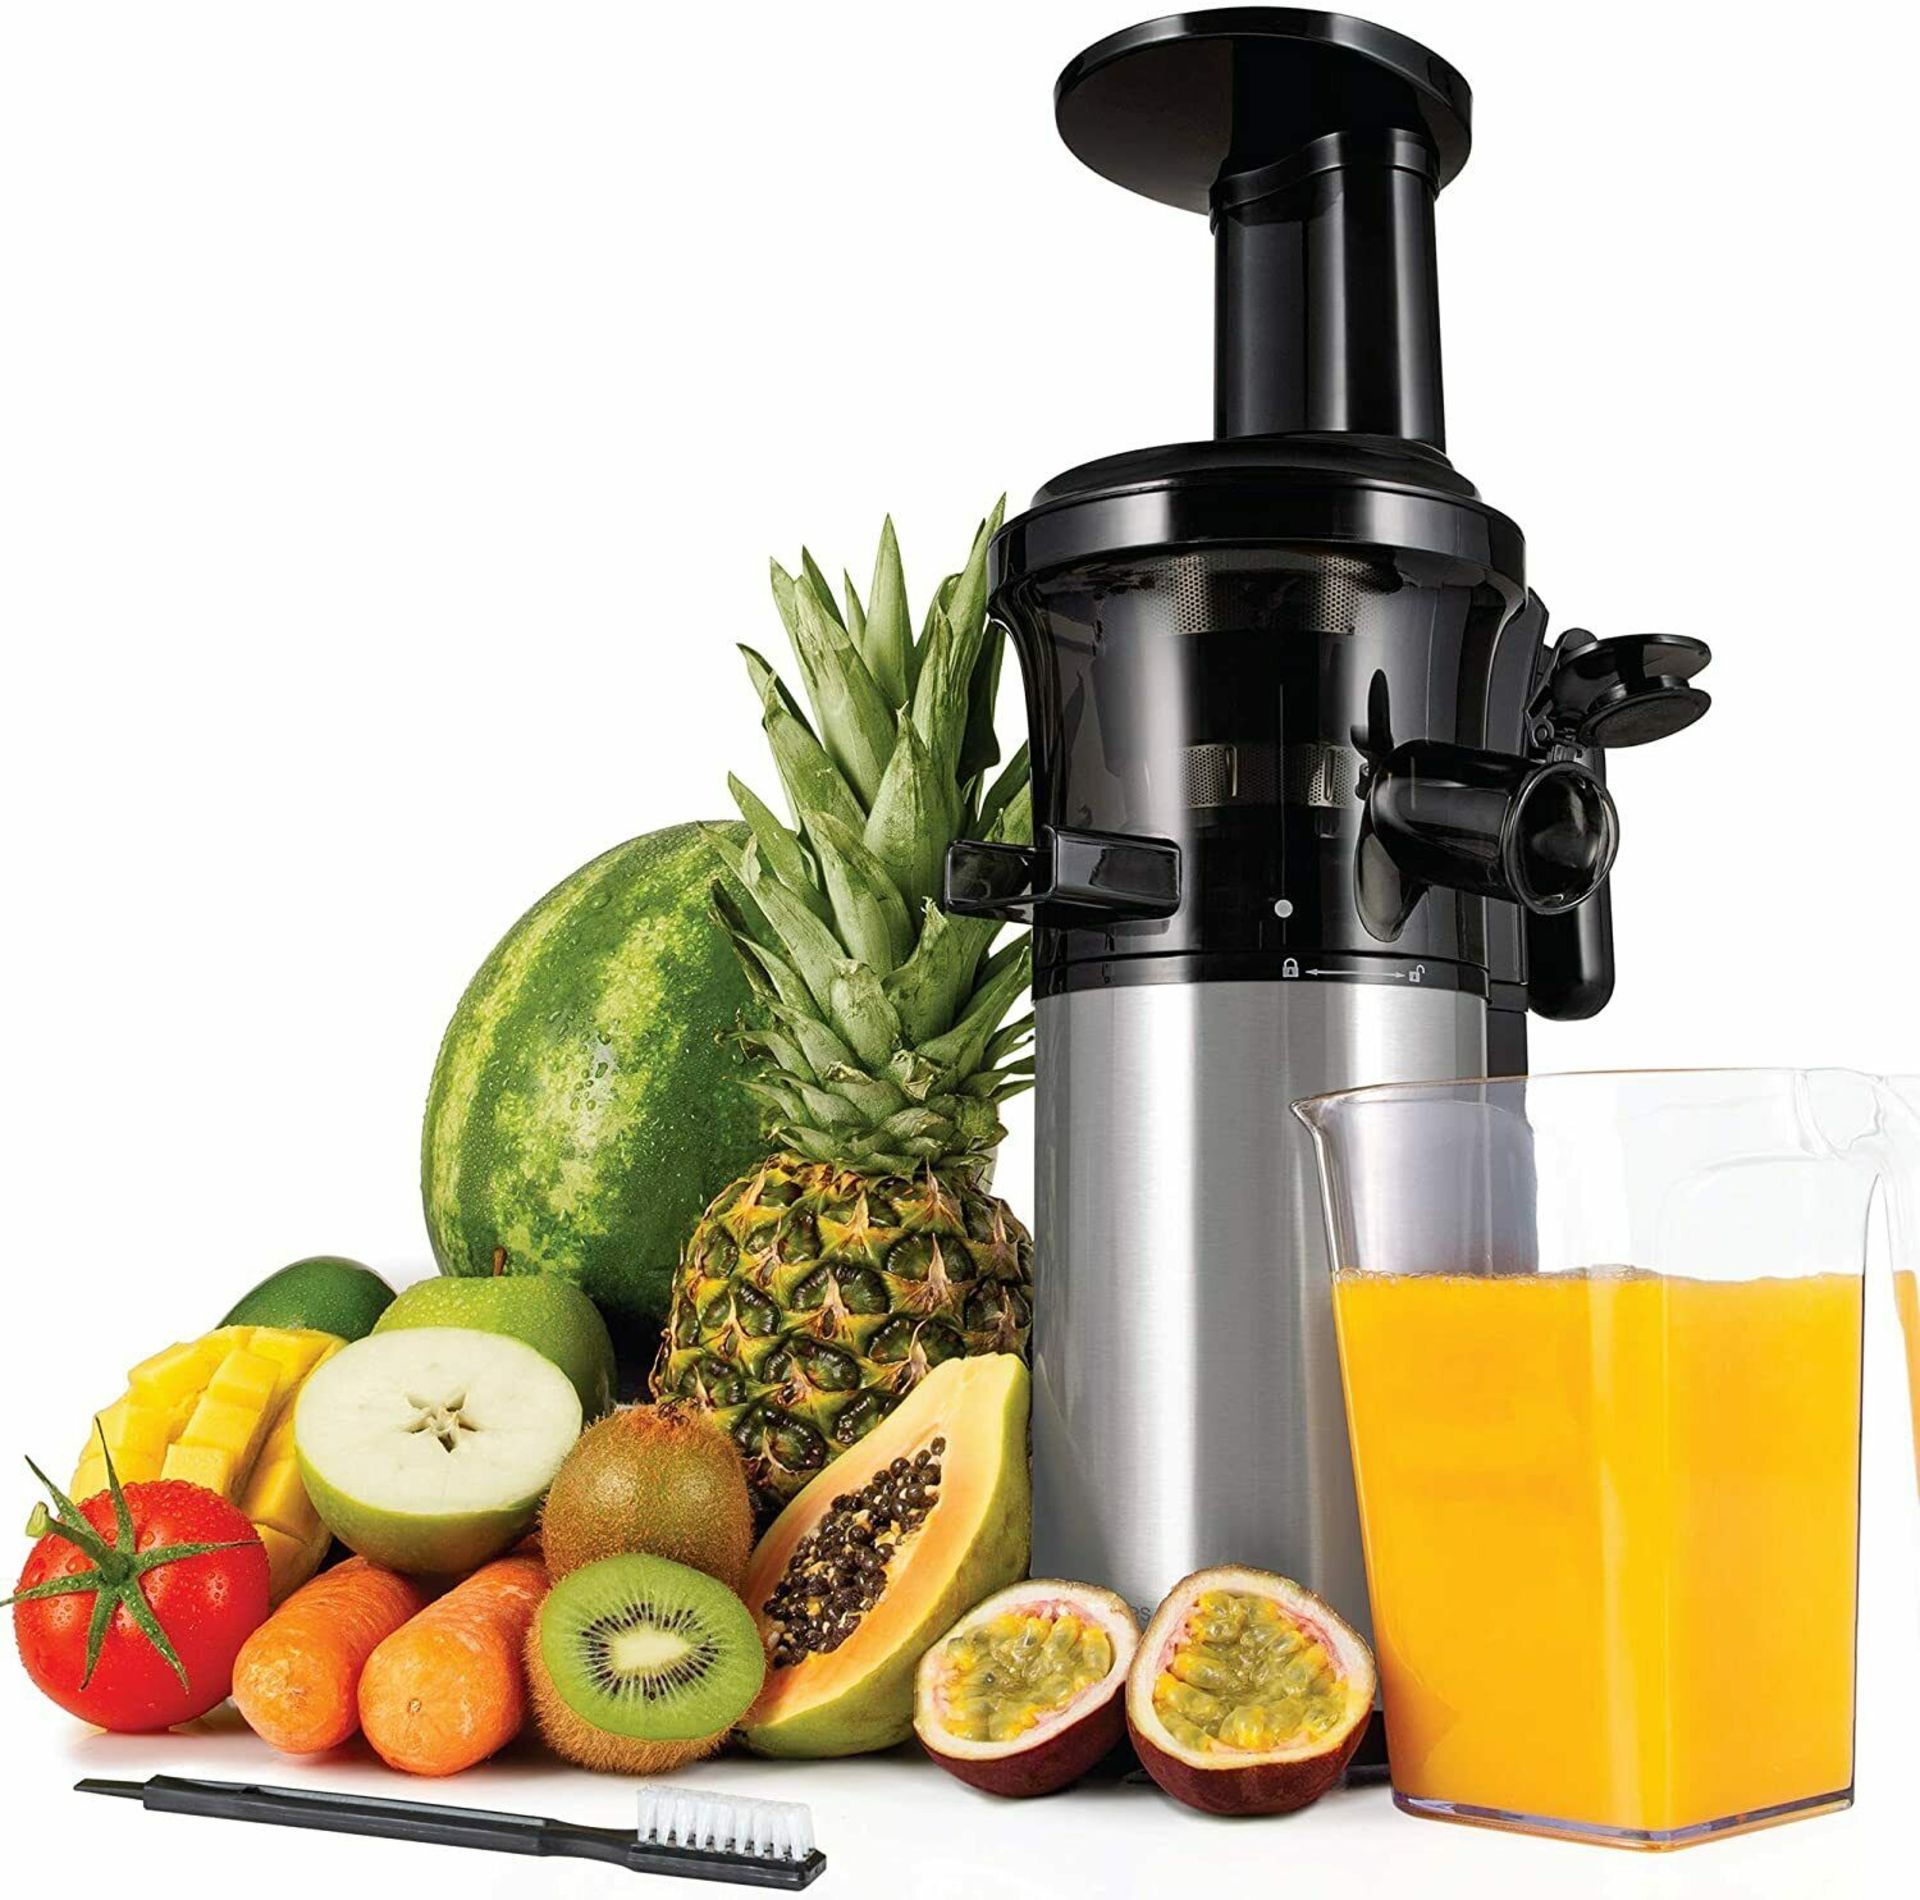 Andrew James Masticating Slow Juicer Machine,Juices Various Fruit Veg Fresh. SLOW MASTICATING J... - Image 2 of 2